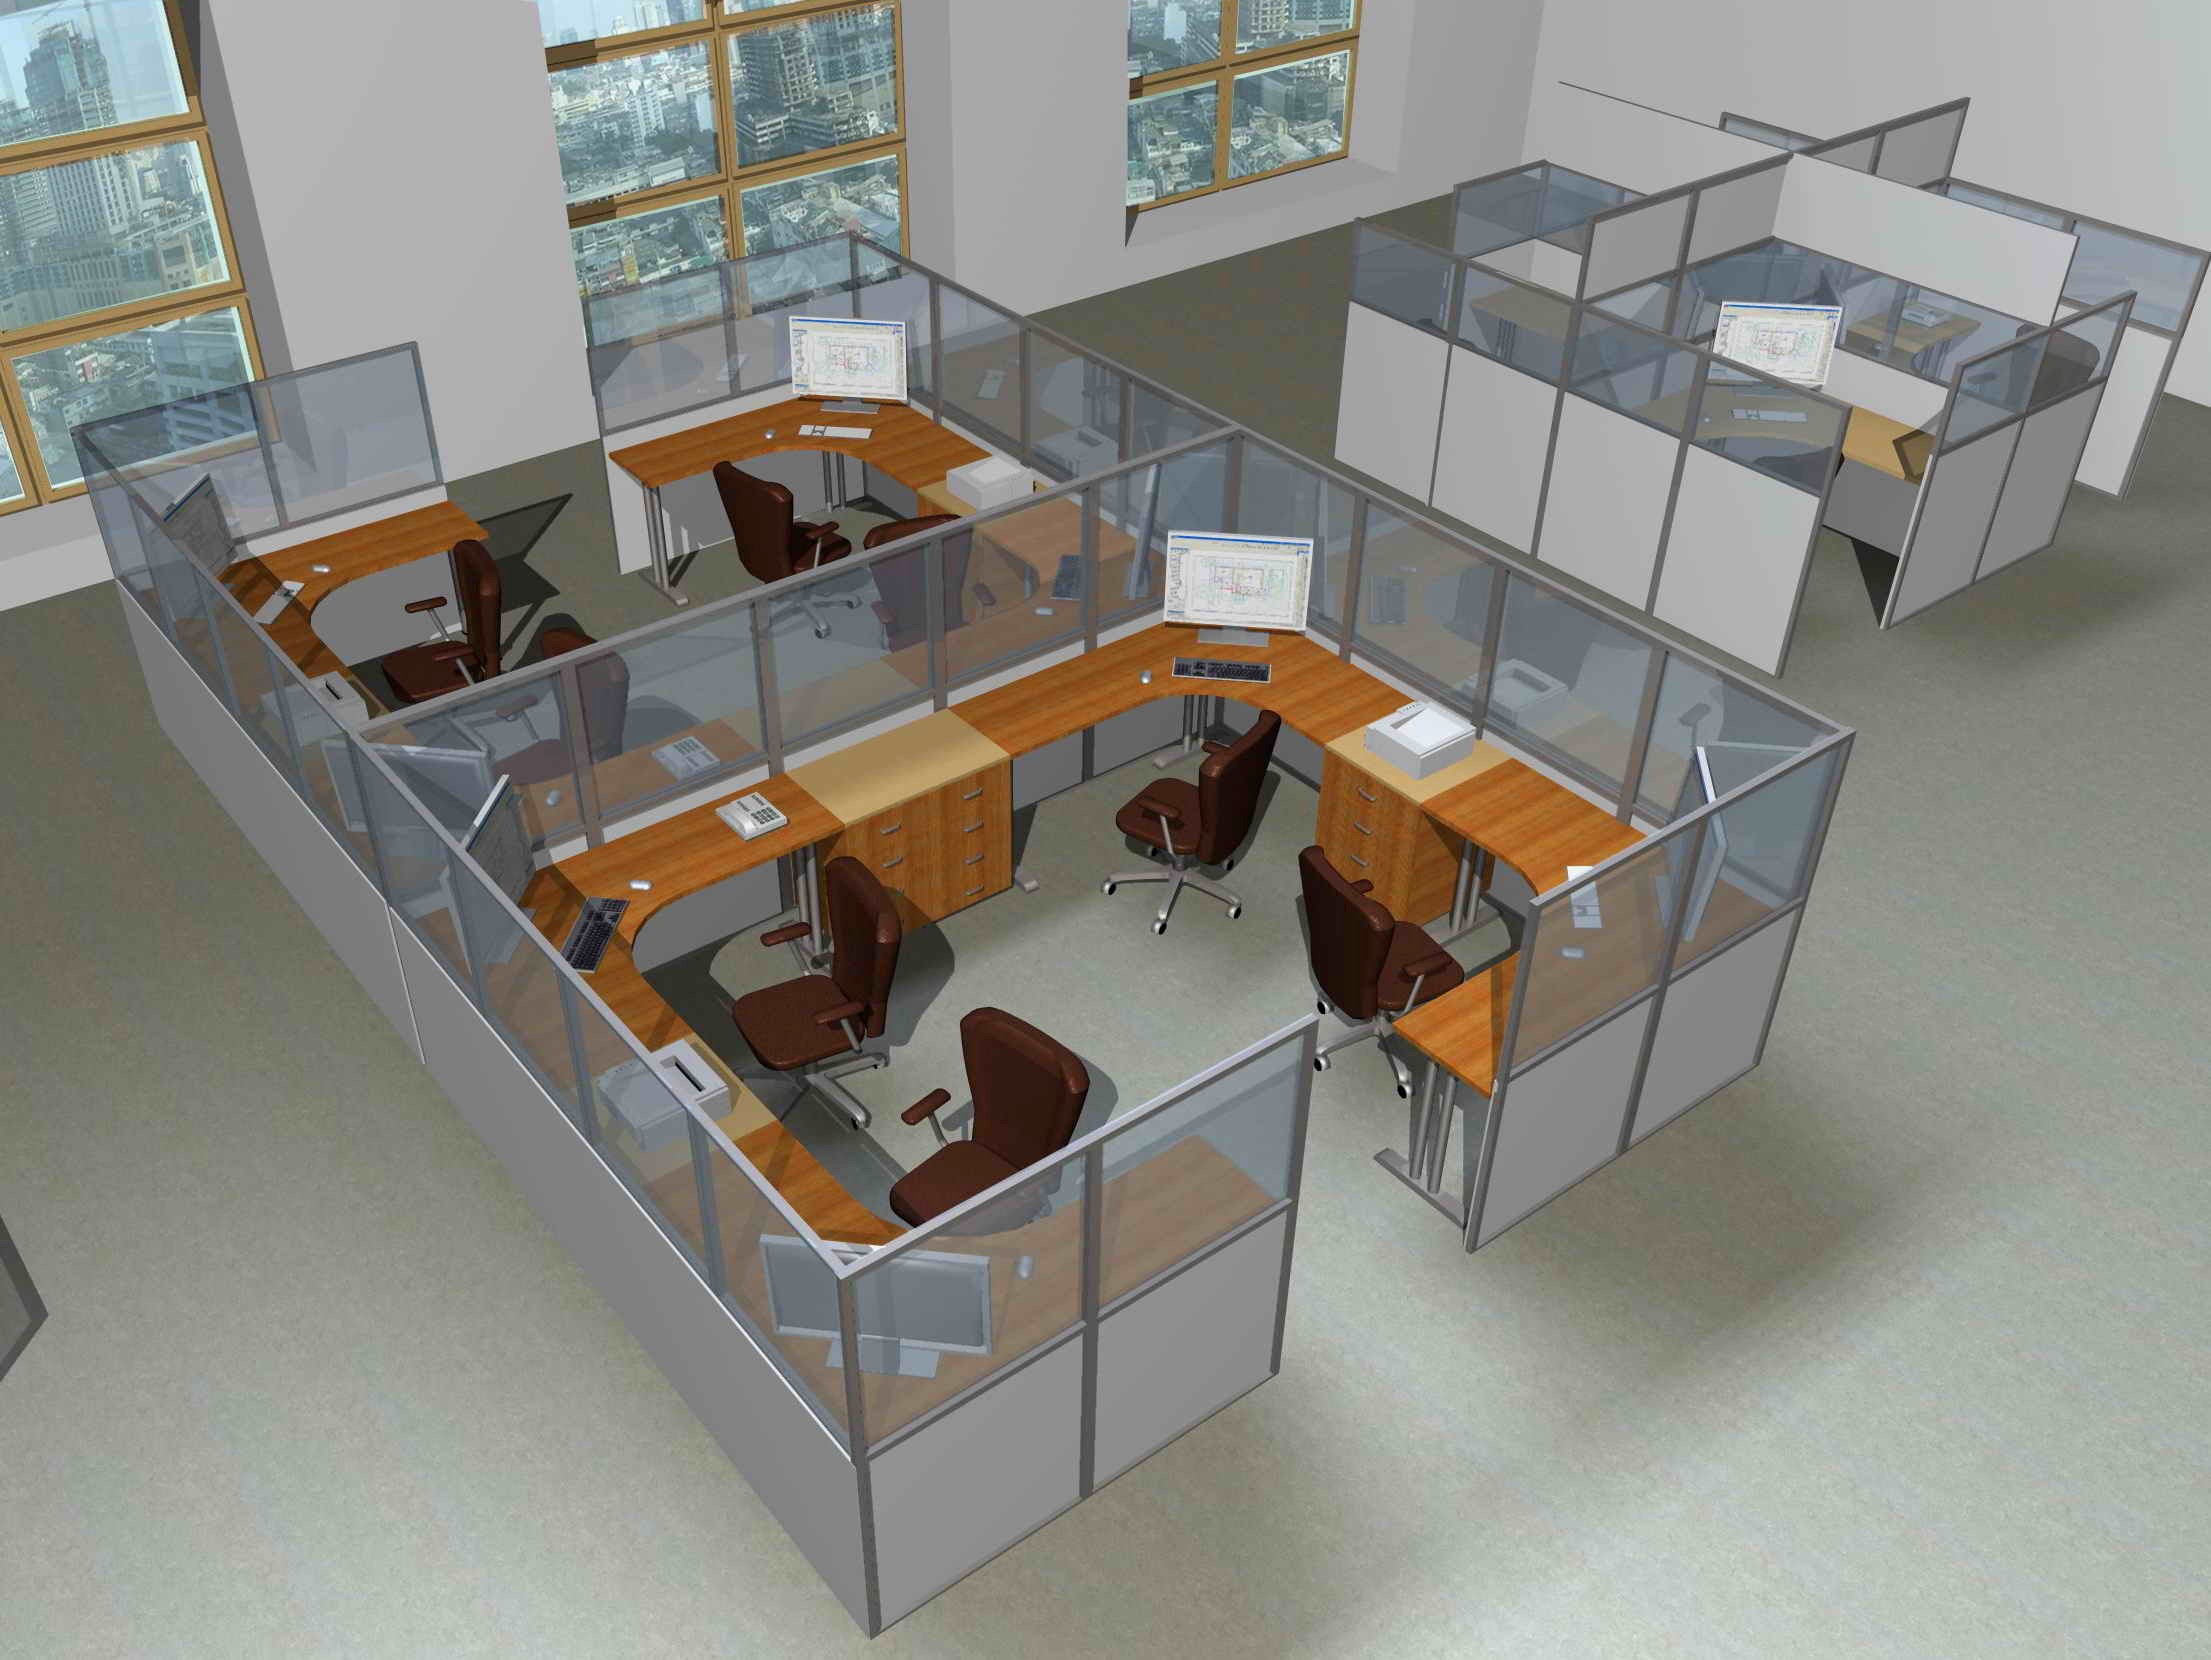 Планировка кабинета в офисе: Планировка офисов – open space, кабинетная или смешанная? – Планировка офиса (90 фото) - правильная организация и современный дизайн